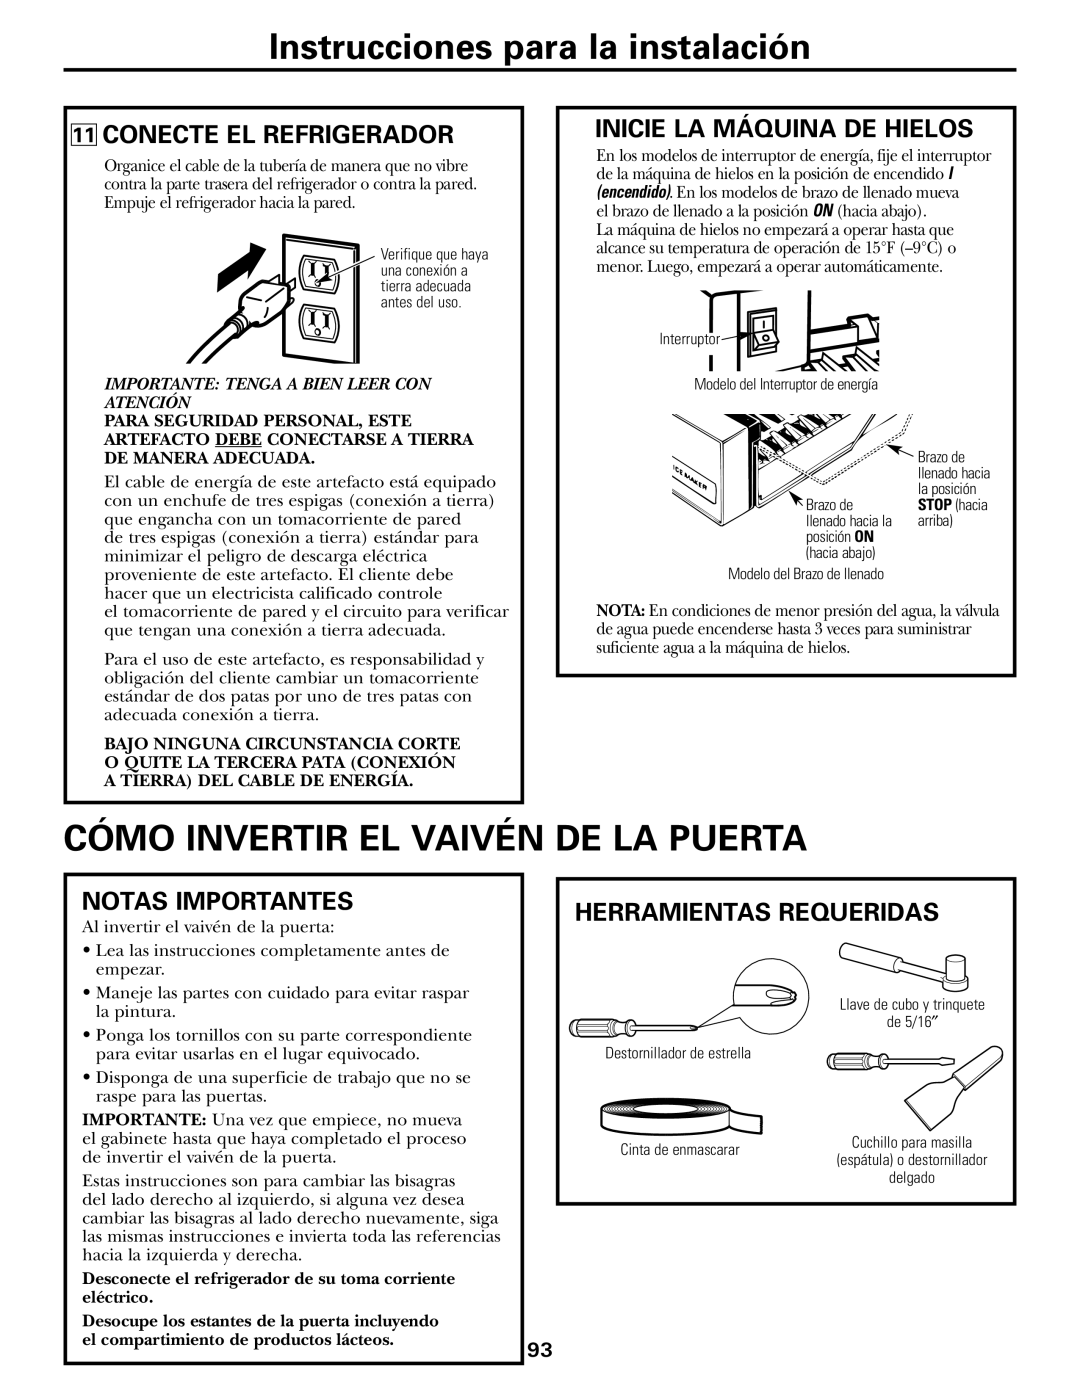 GE GTH21 Cómo Invertir El Vaivén De La Puerta, Conecte El Refrigerador, Inicie La Máquina De Hielos, Notas Importantes 